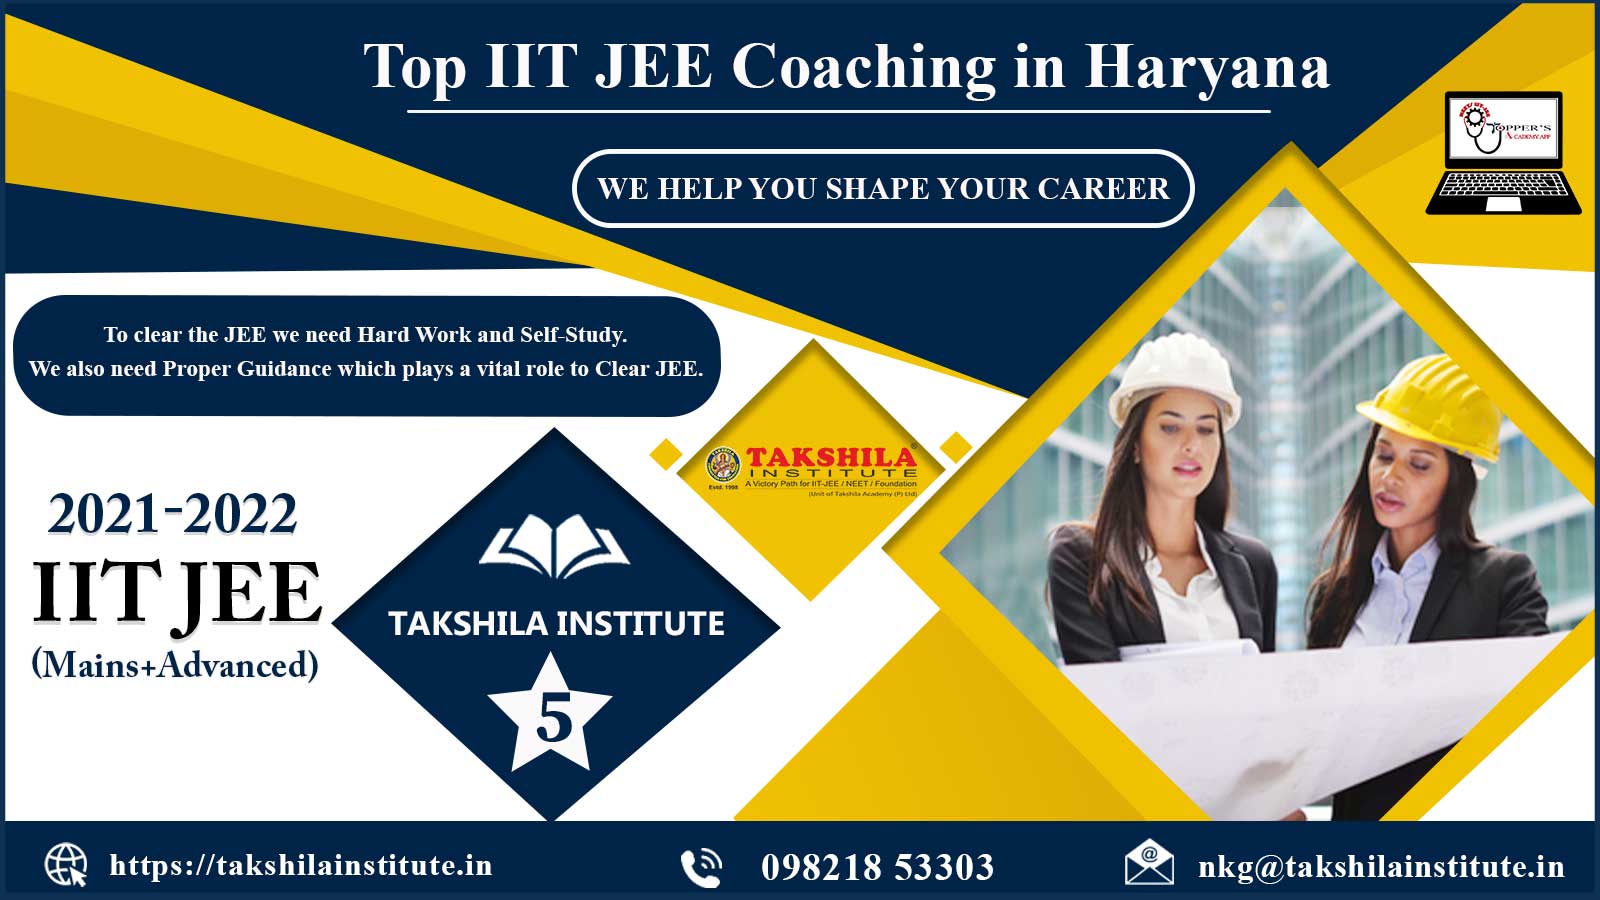 Top IIT JEE Coaching Centers in Haryana